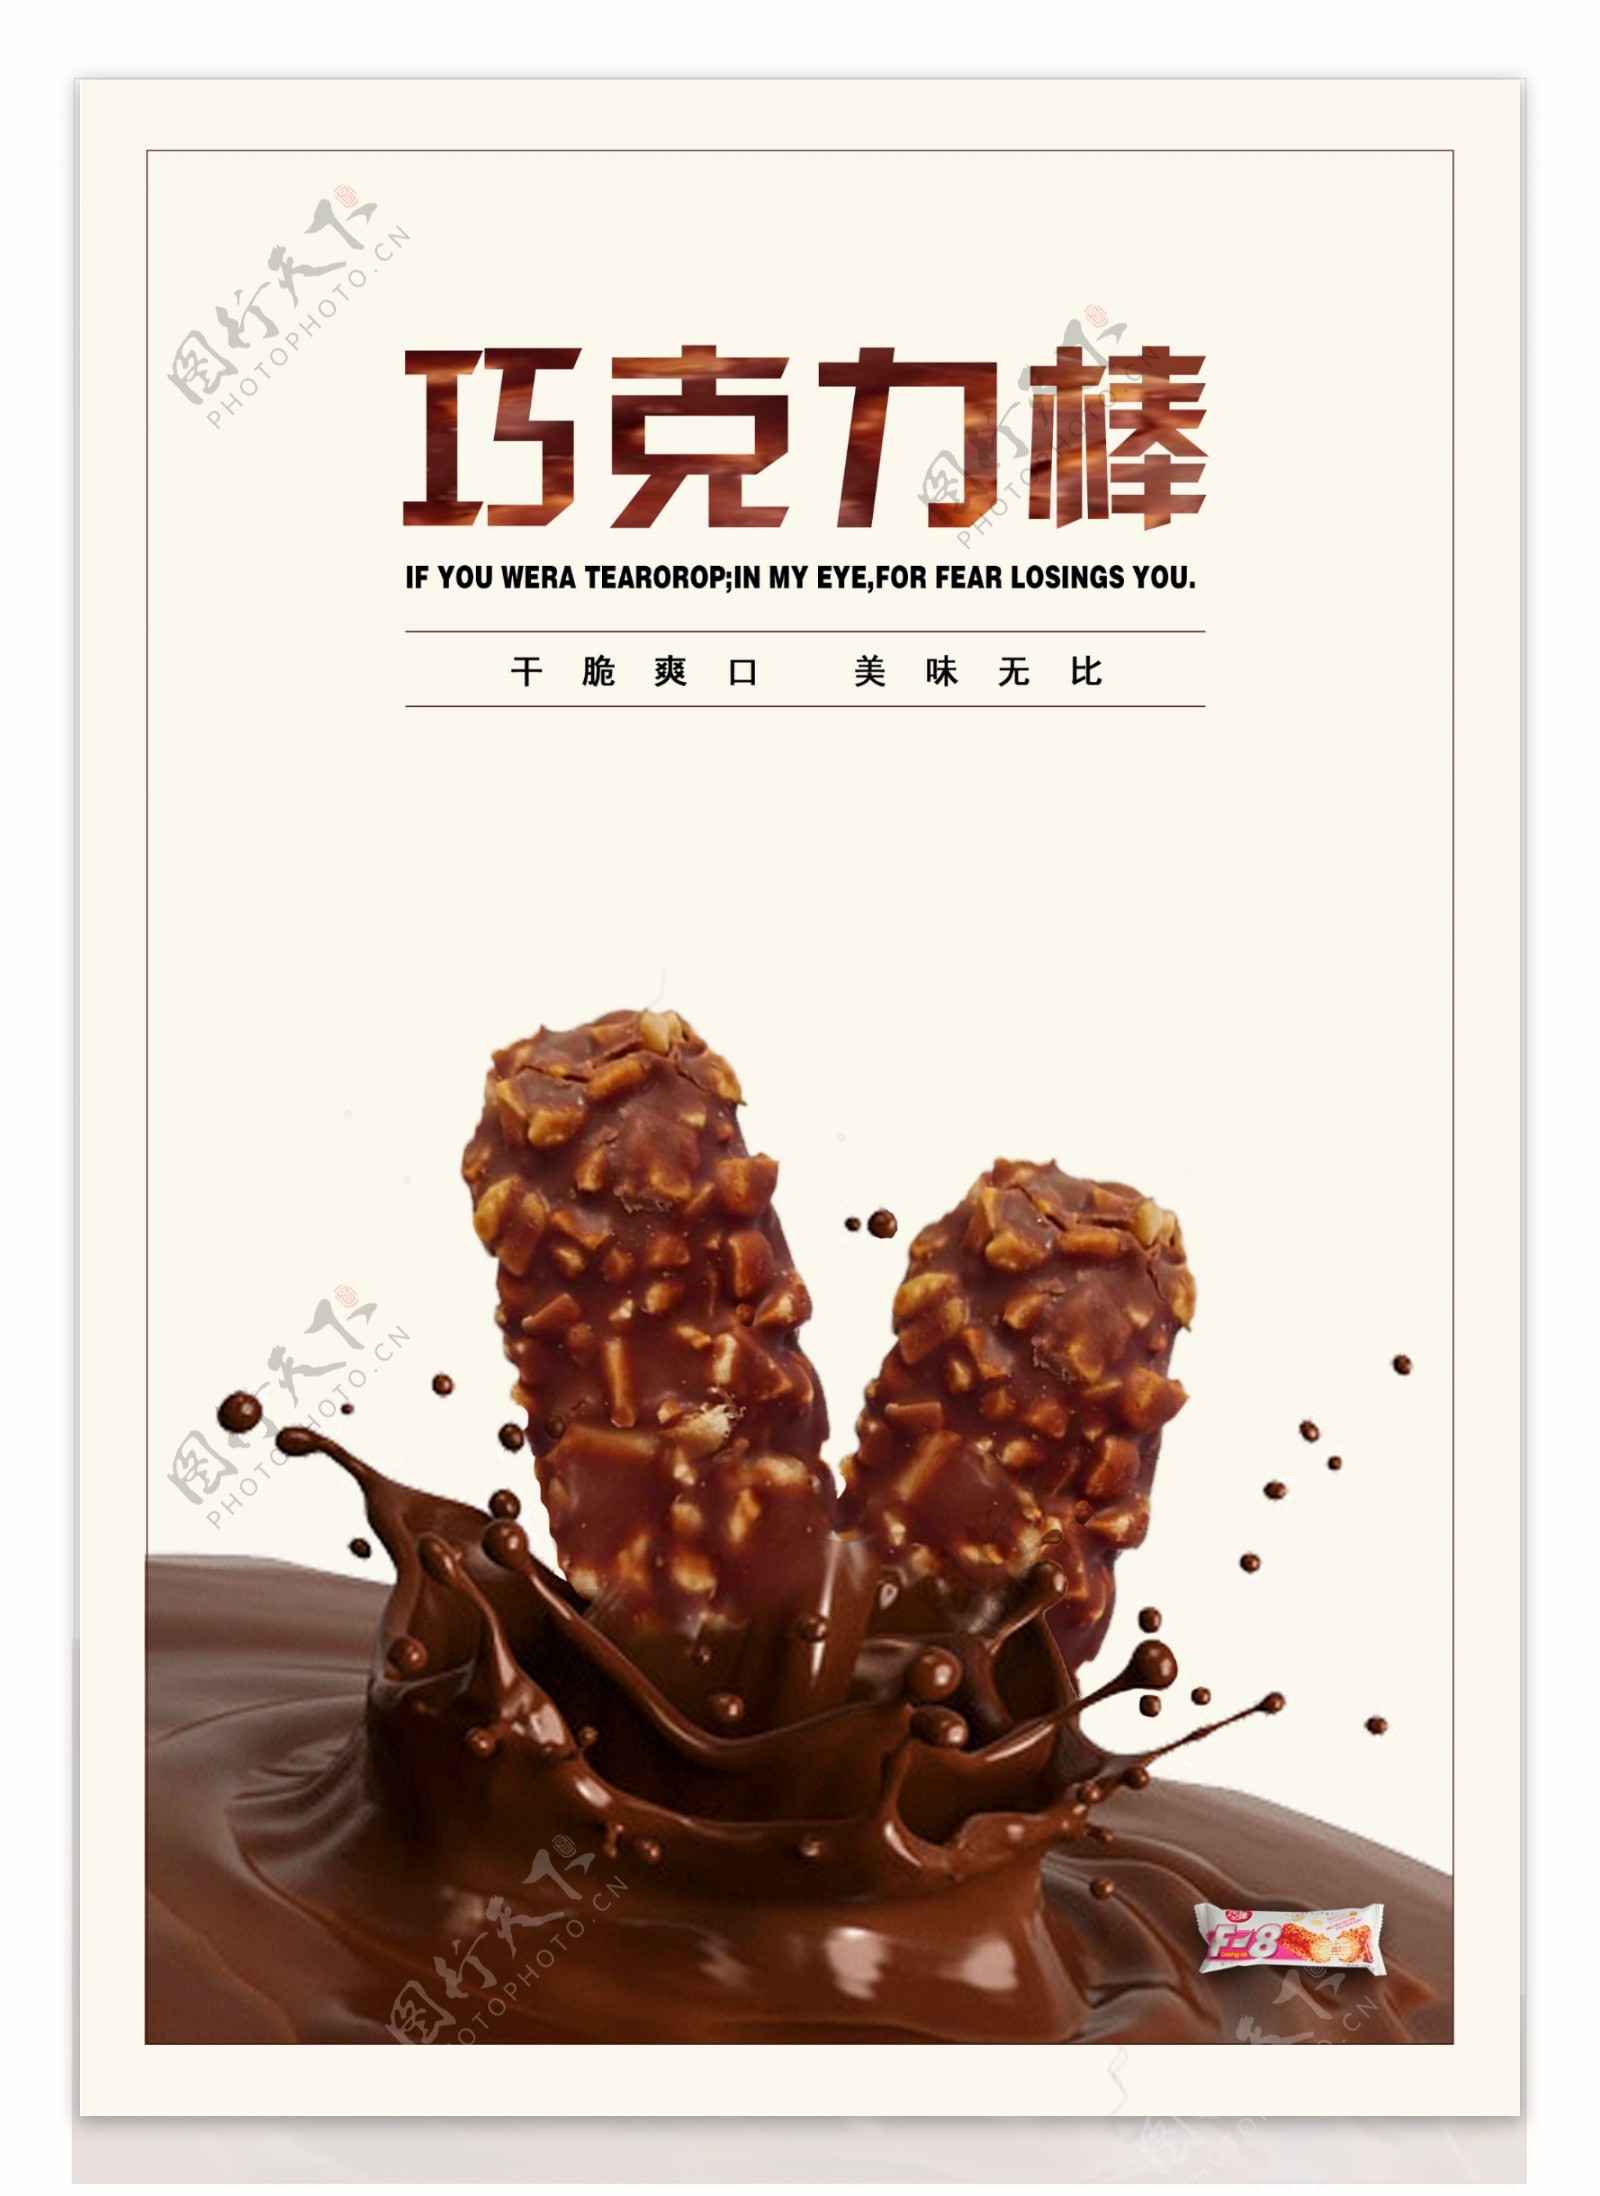 巧克力棒美食宣传海报